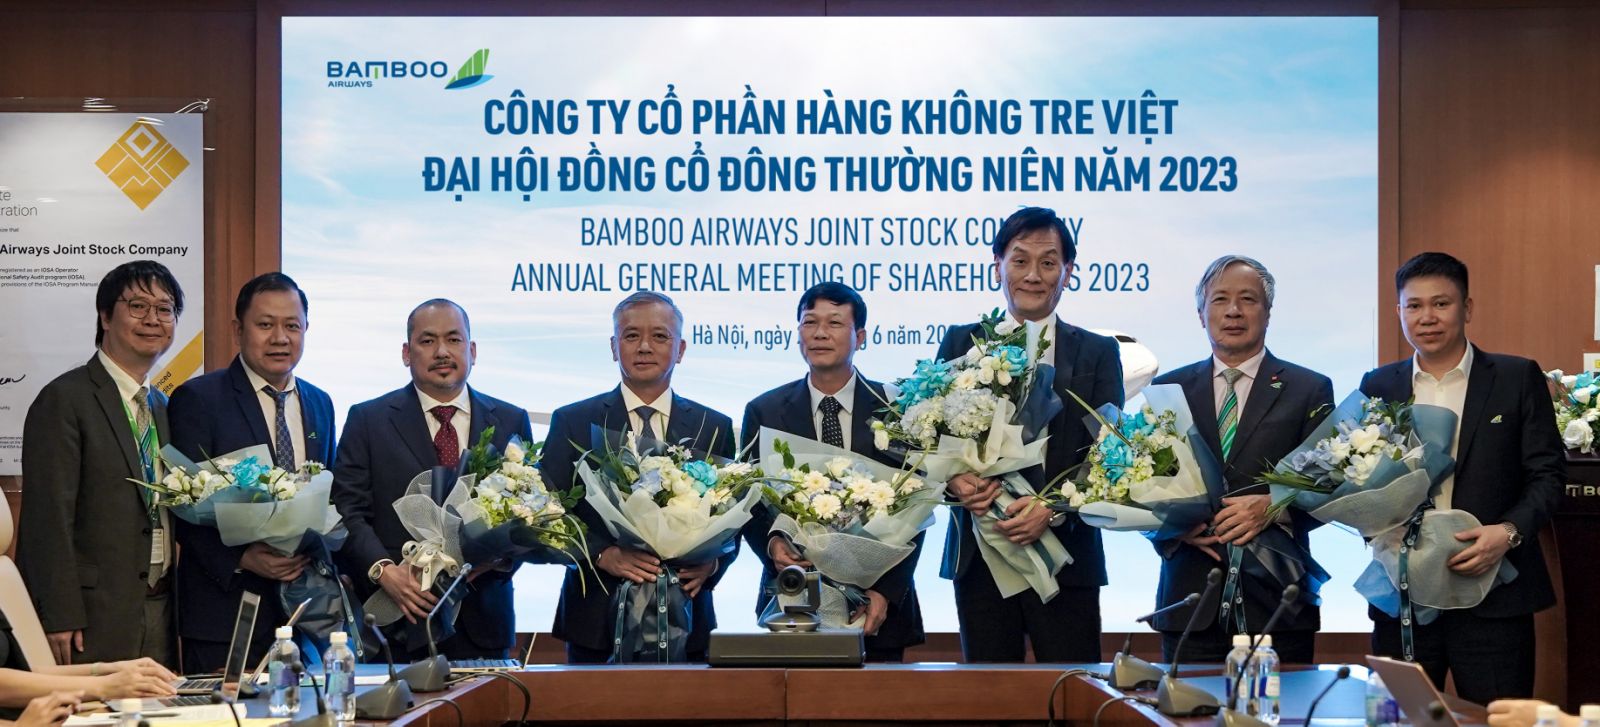 Chủ tịch mới của Bamboo Airways: Từng là sếp tại Japan Airlines, giám đốc dự án sân bay tại Nhật Bản - Ảnh 1.